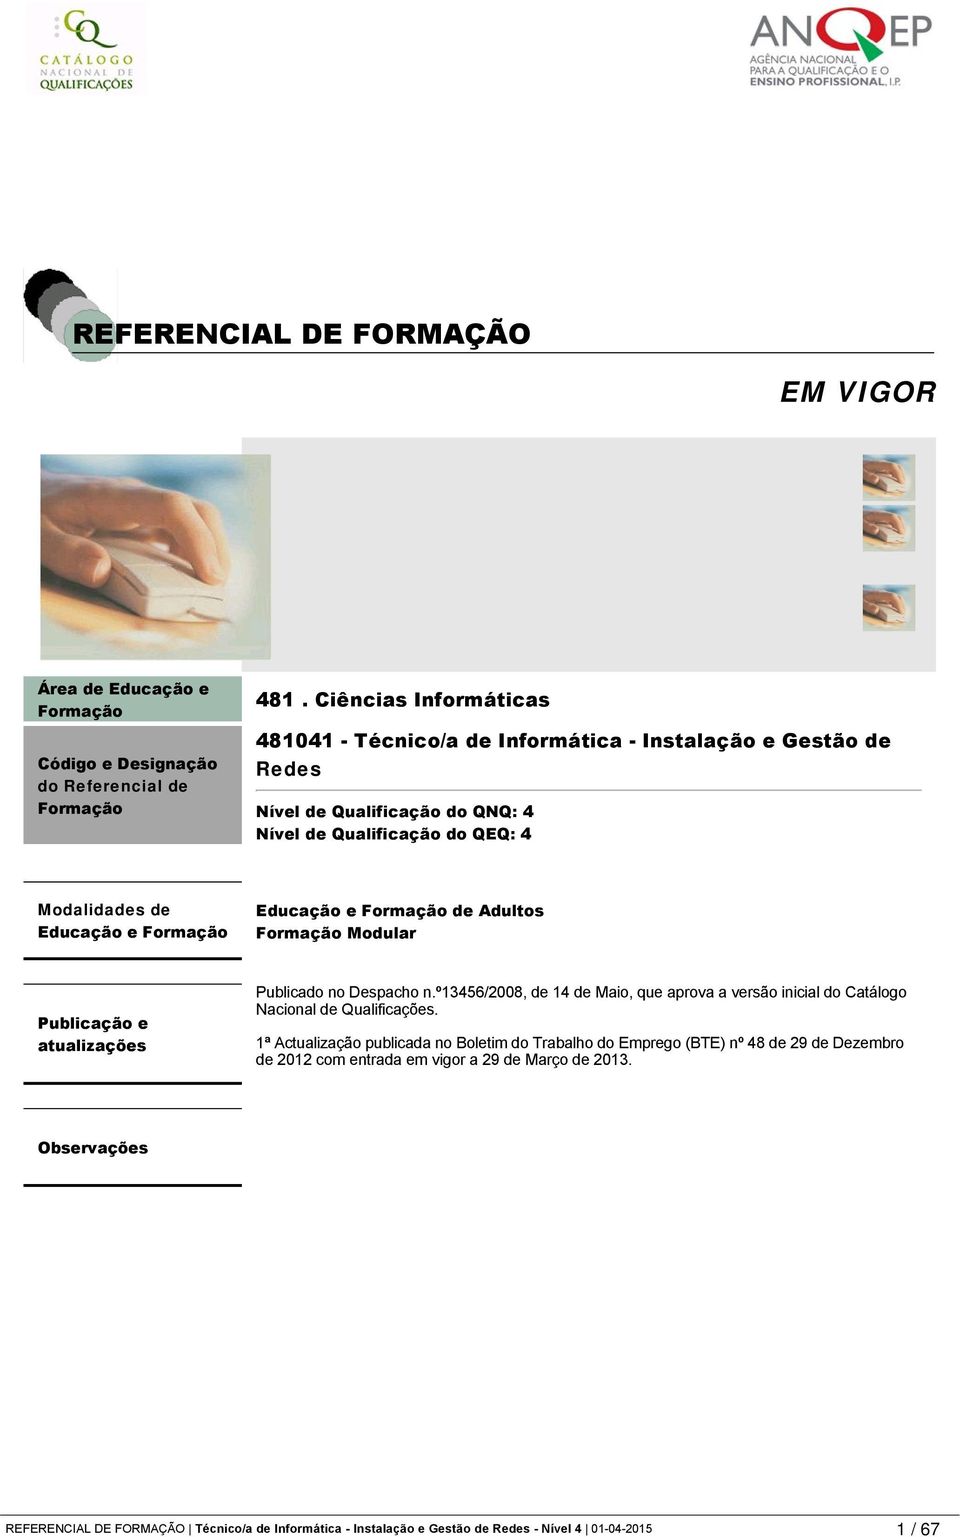 Formação de Adultos Formação Modular Publicação e atualizações Publicado no Despacho n.º13456/2008, de 14 de Maio, que aprova a versão inicial do Catálogo Nacional de Qualificações.